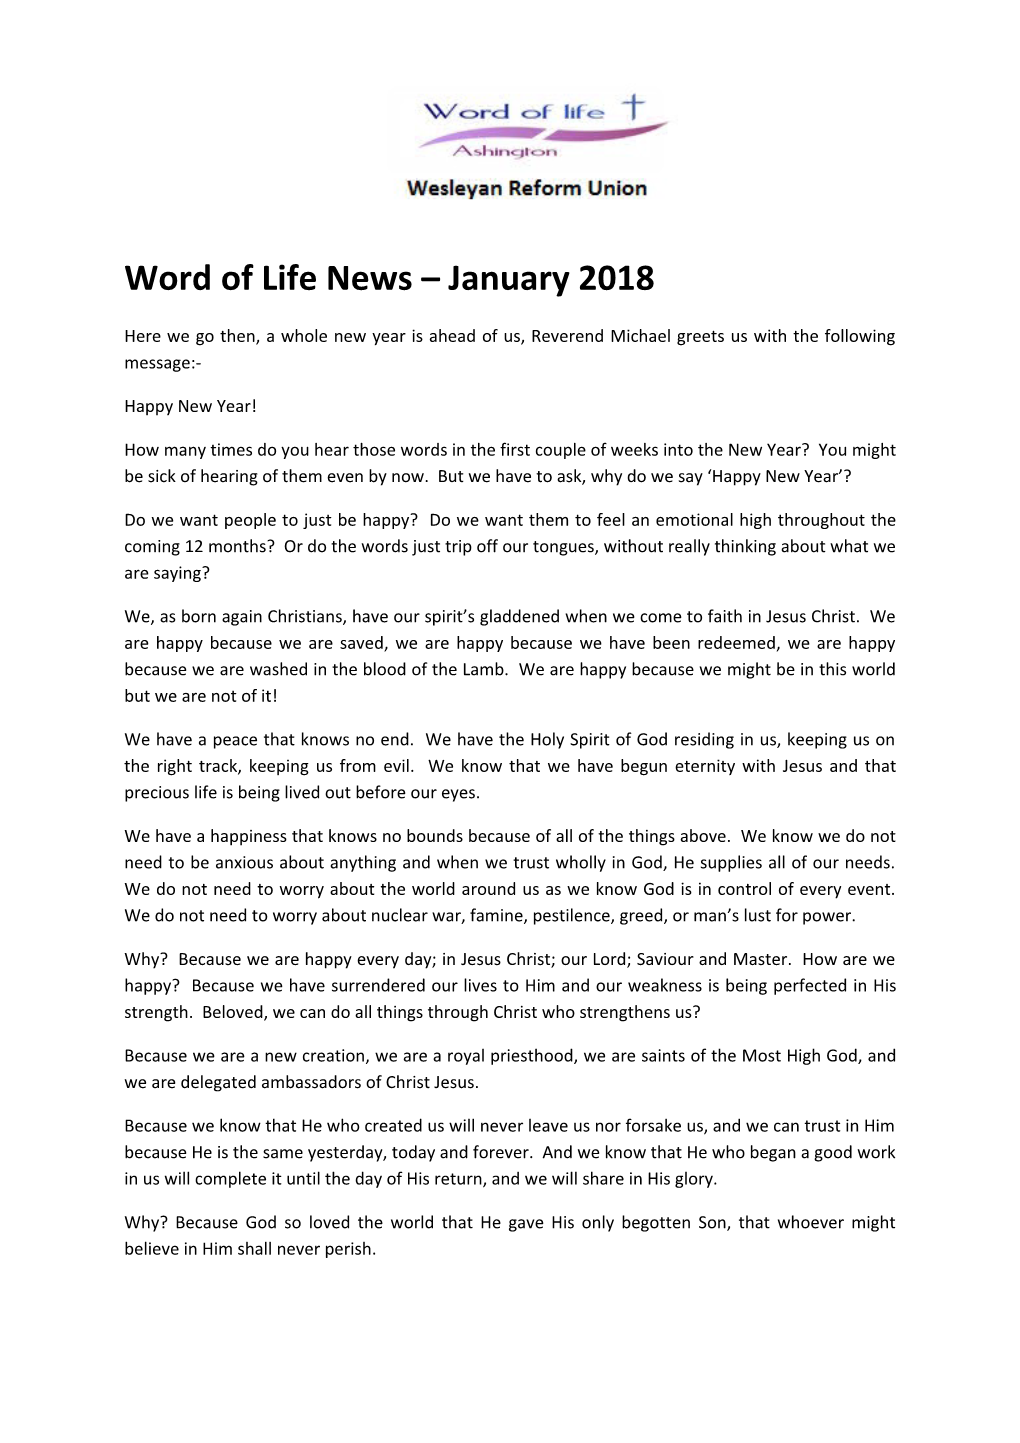 Word of Life News January 2018